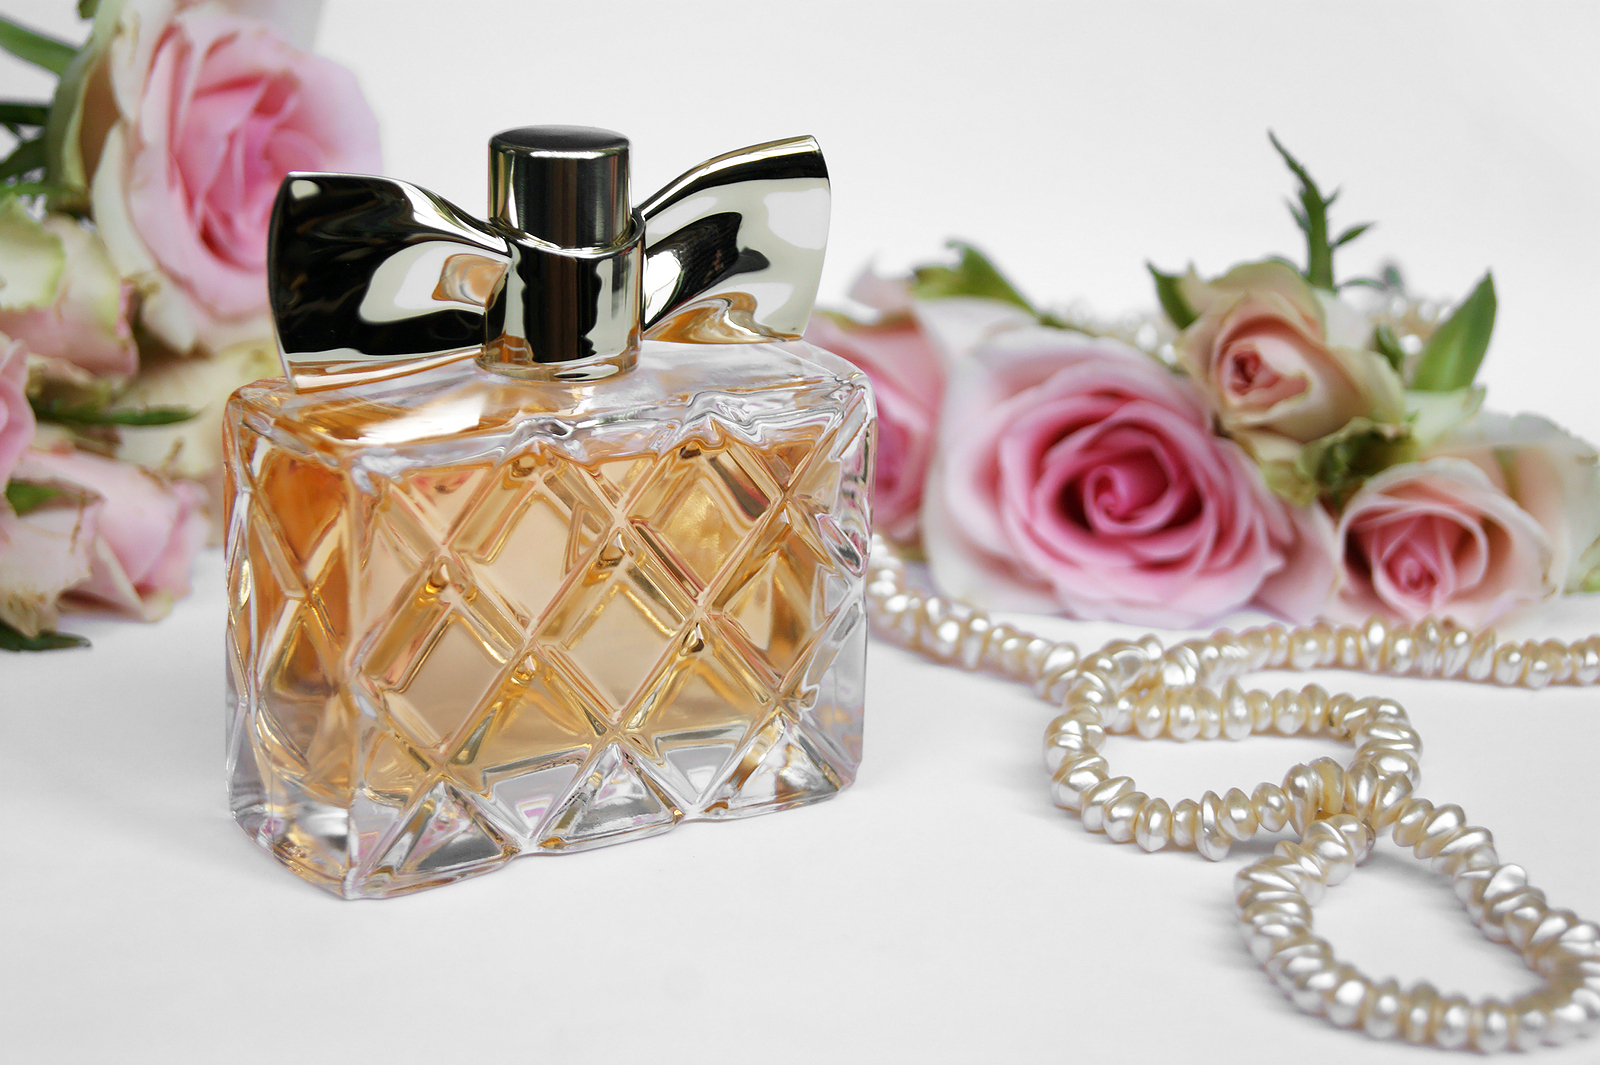 https://300magazine.com/wp-content/uploads/2021/03/Luxury-perfume.jpg